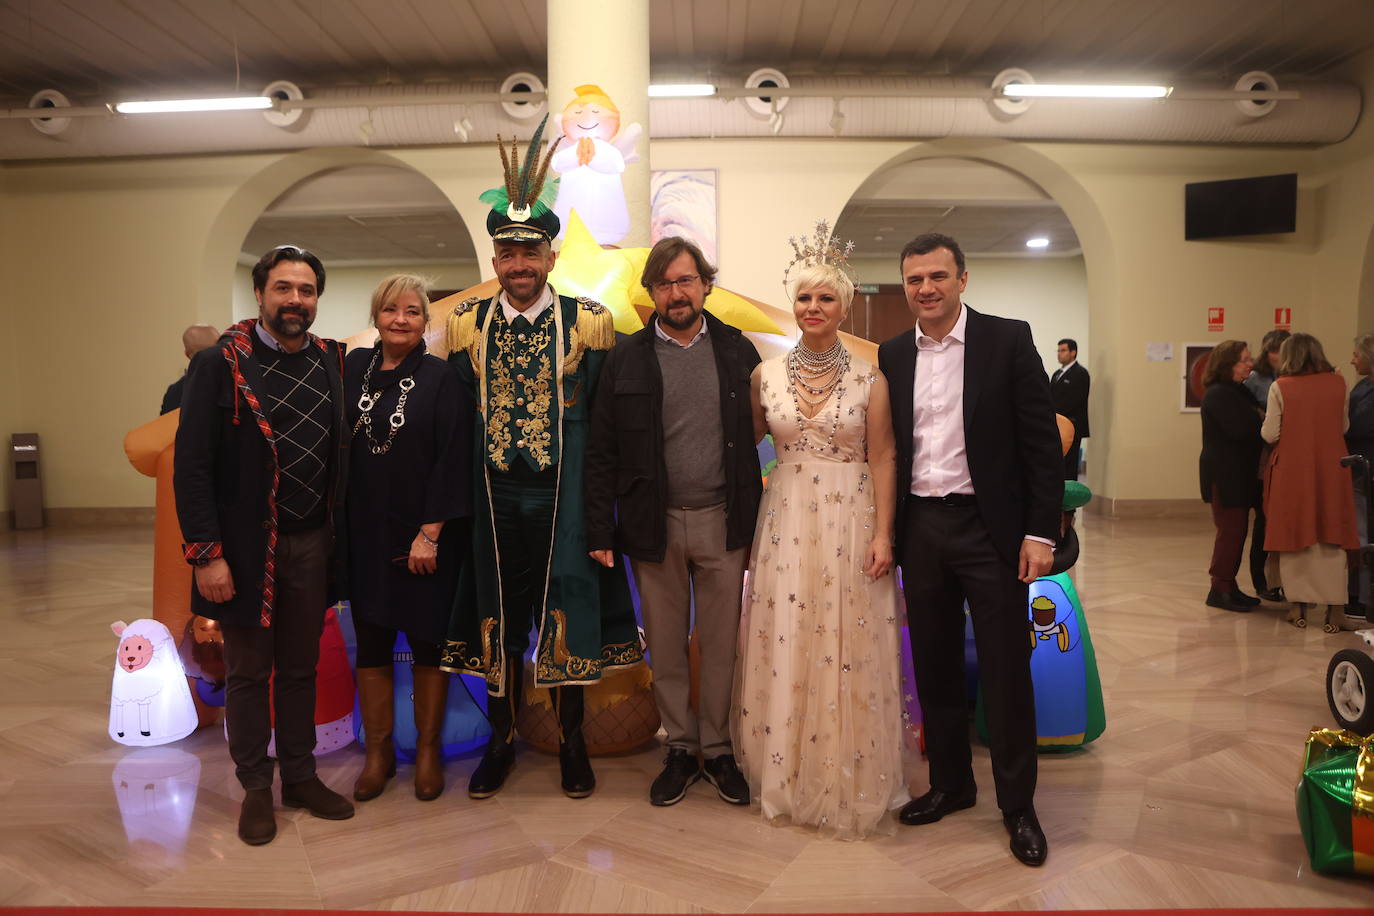 Fotos: Gala de la Ilusión de los Reyes Magos en Cádiz